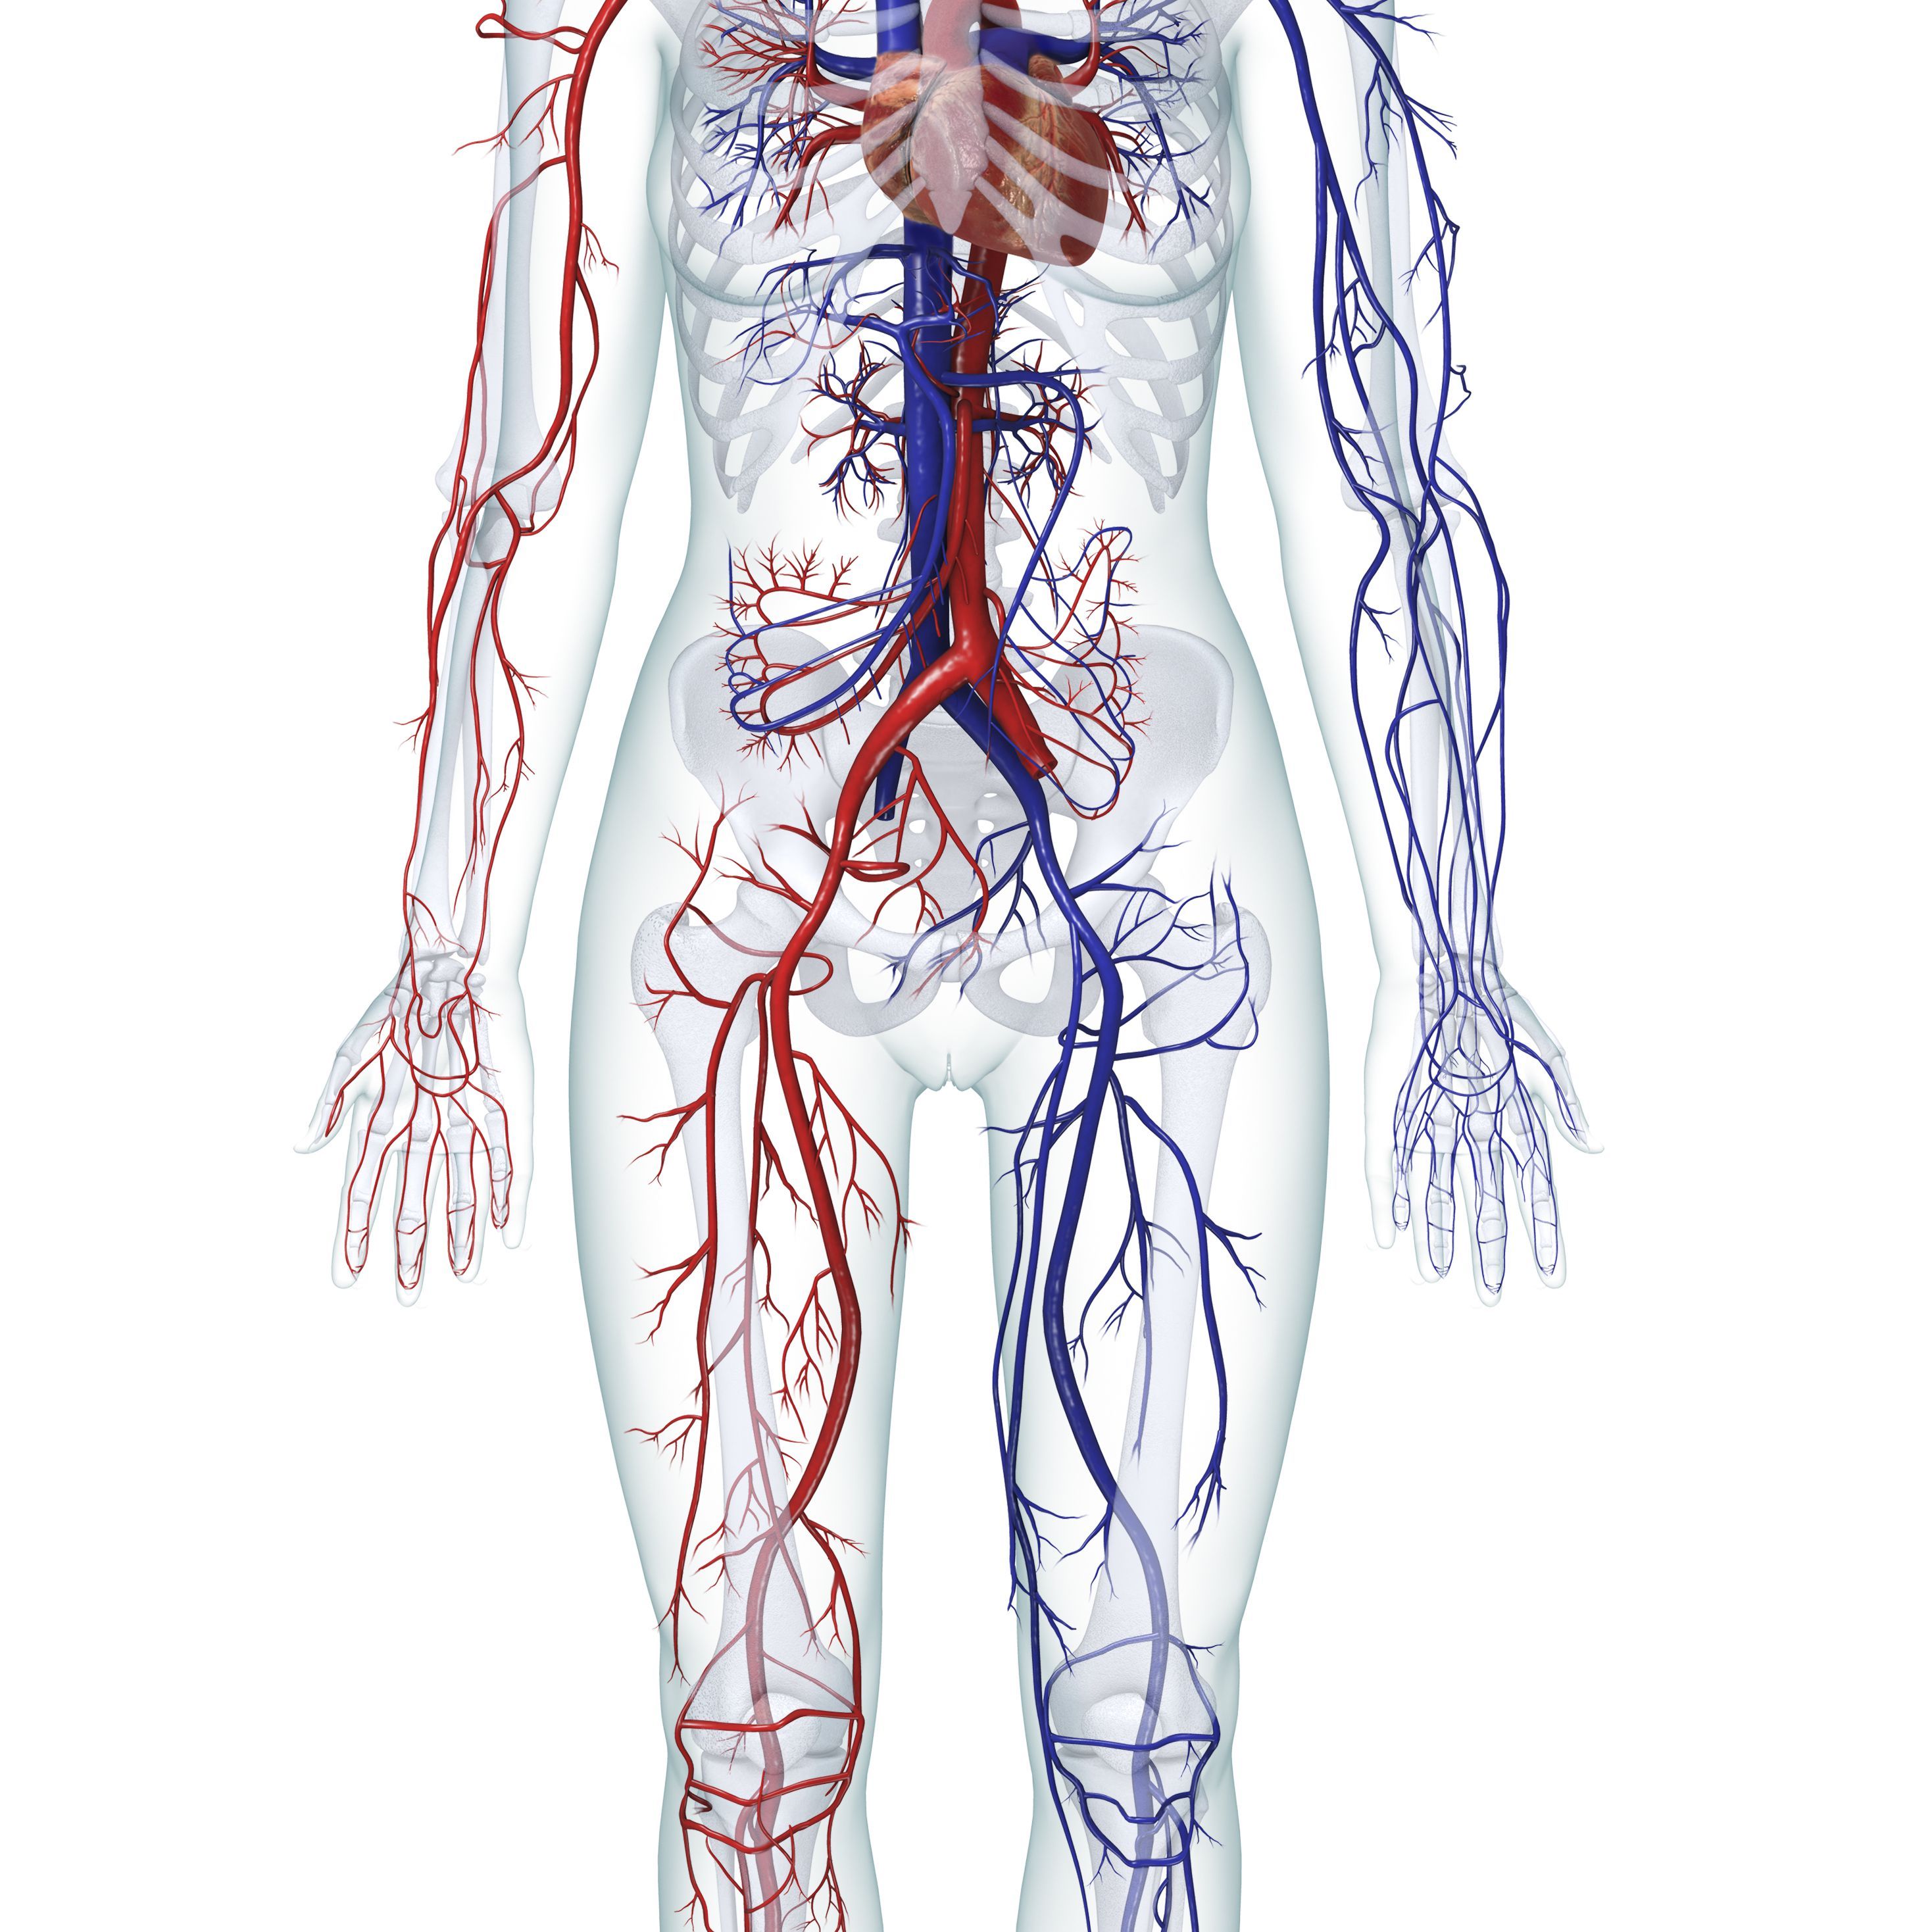 Кровеносная система человека Вена артерии